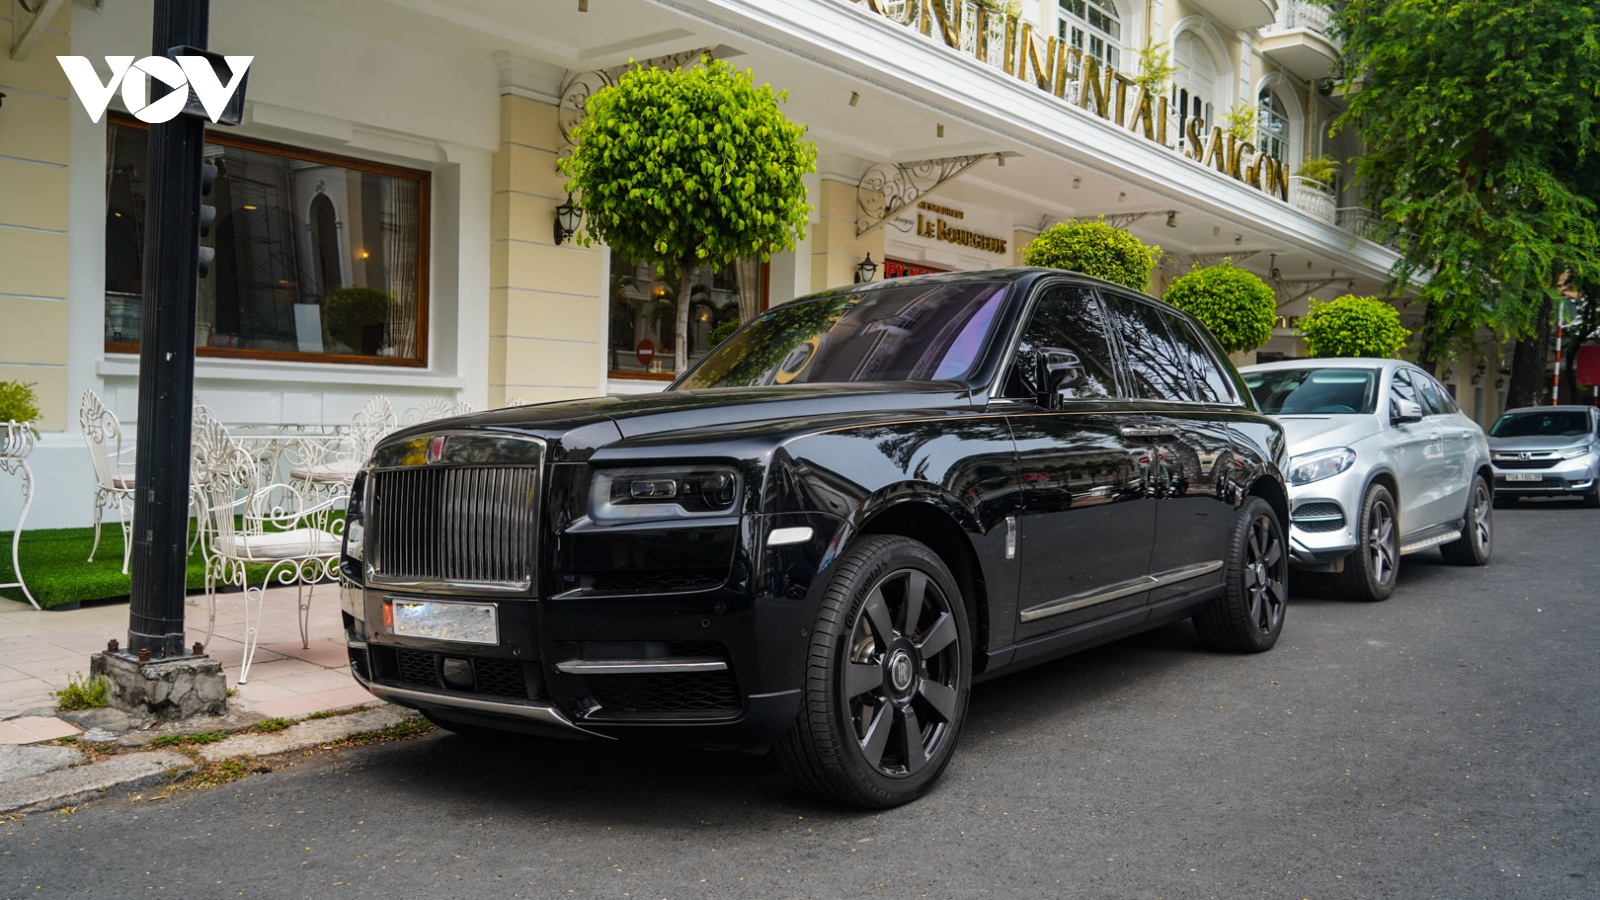 SUV hơn 40 tỷ đồng - Rolls-Royce Cullinan khoe dáng trên phố ngày cuối tuần